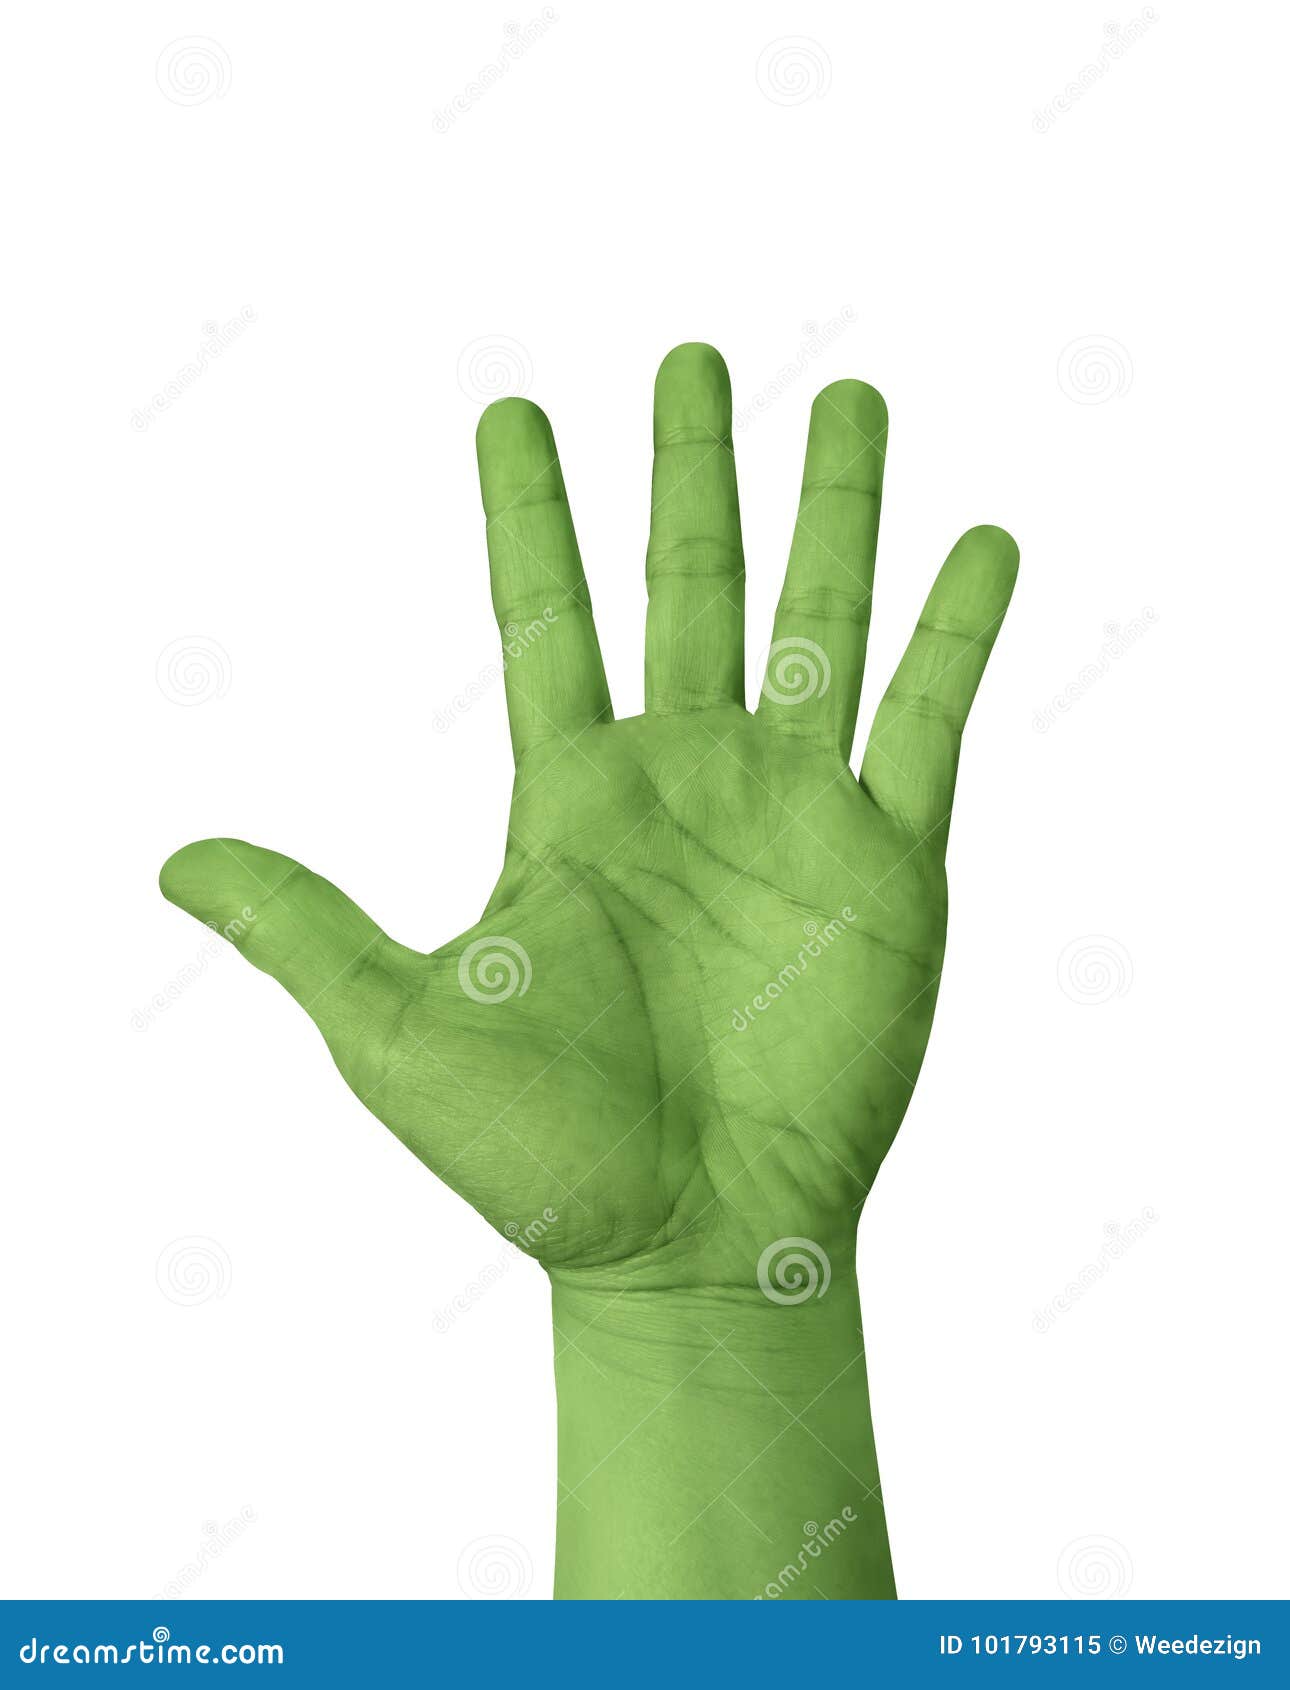 Правая рука зеленая. Зеленая рука. Салатовые пальцы. Позеленела рука. Средний палец на руку зелёный.